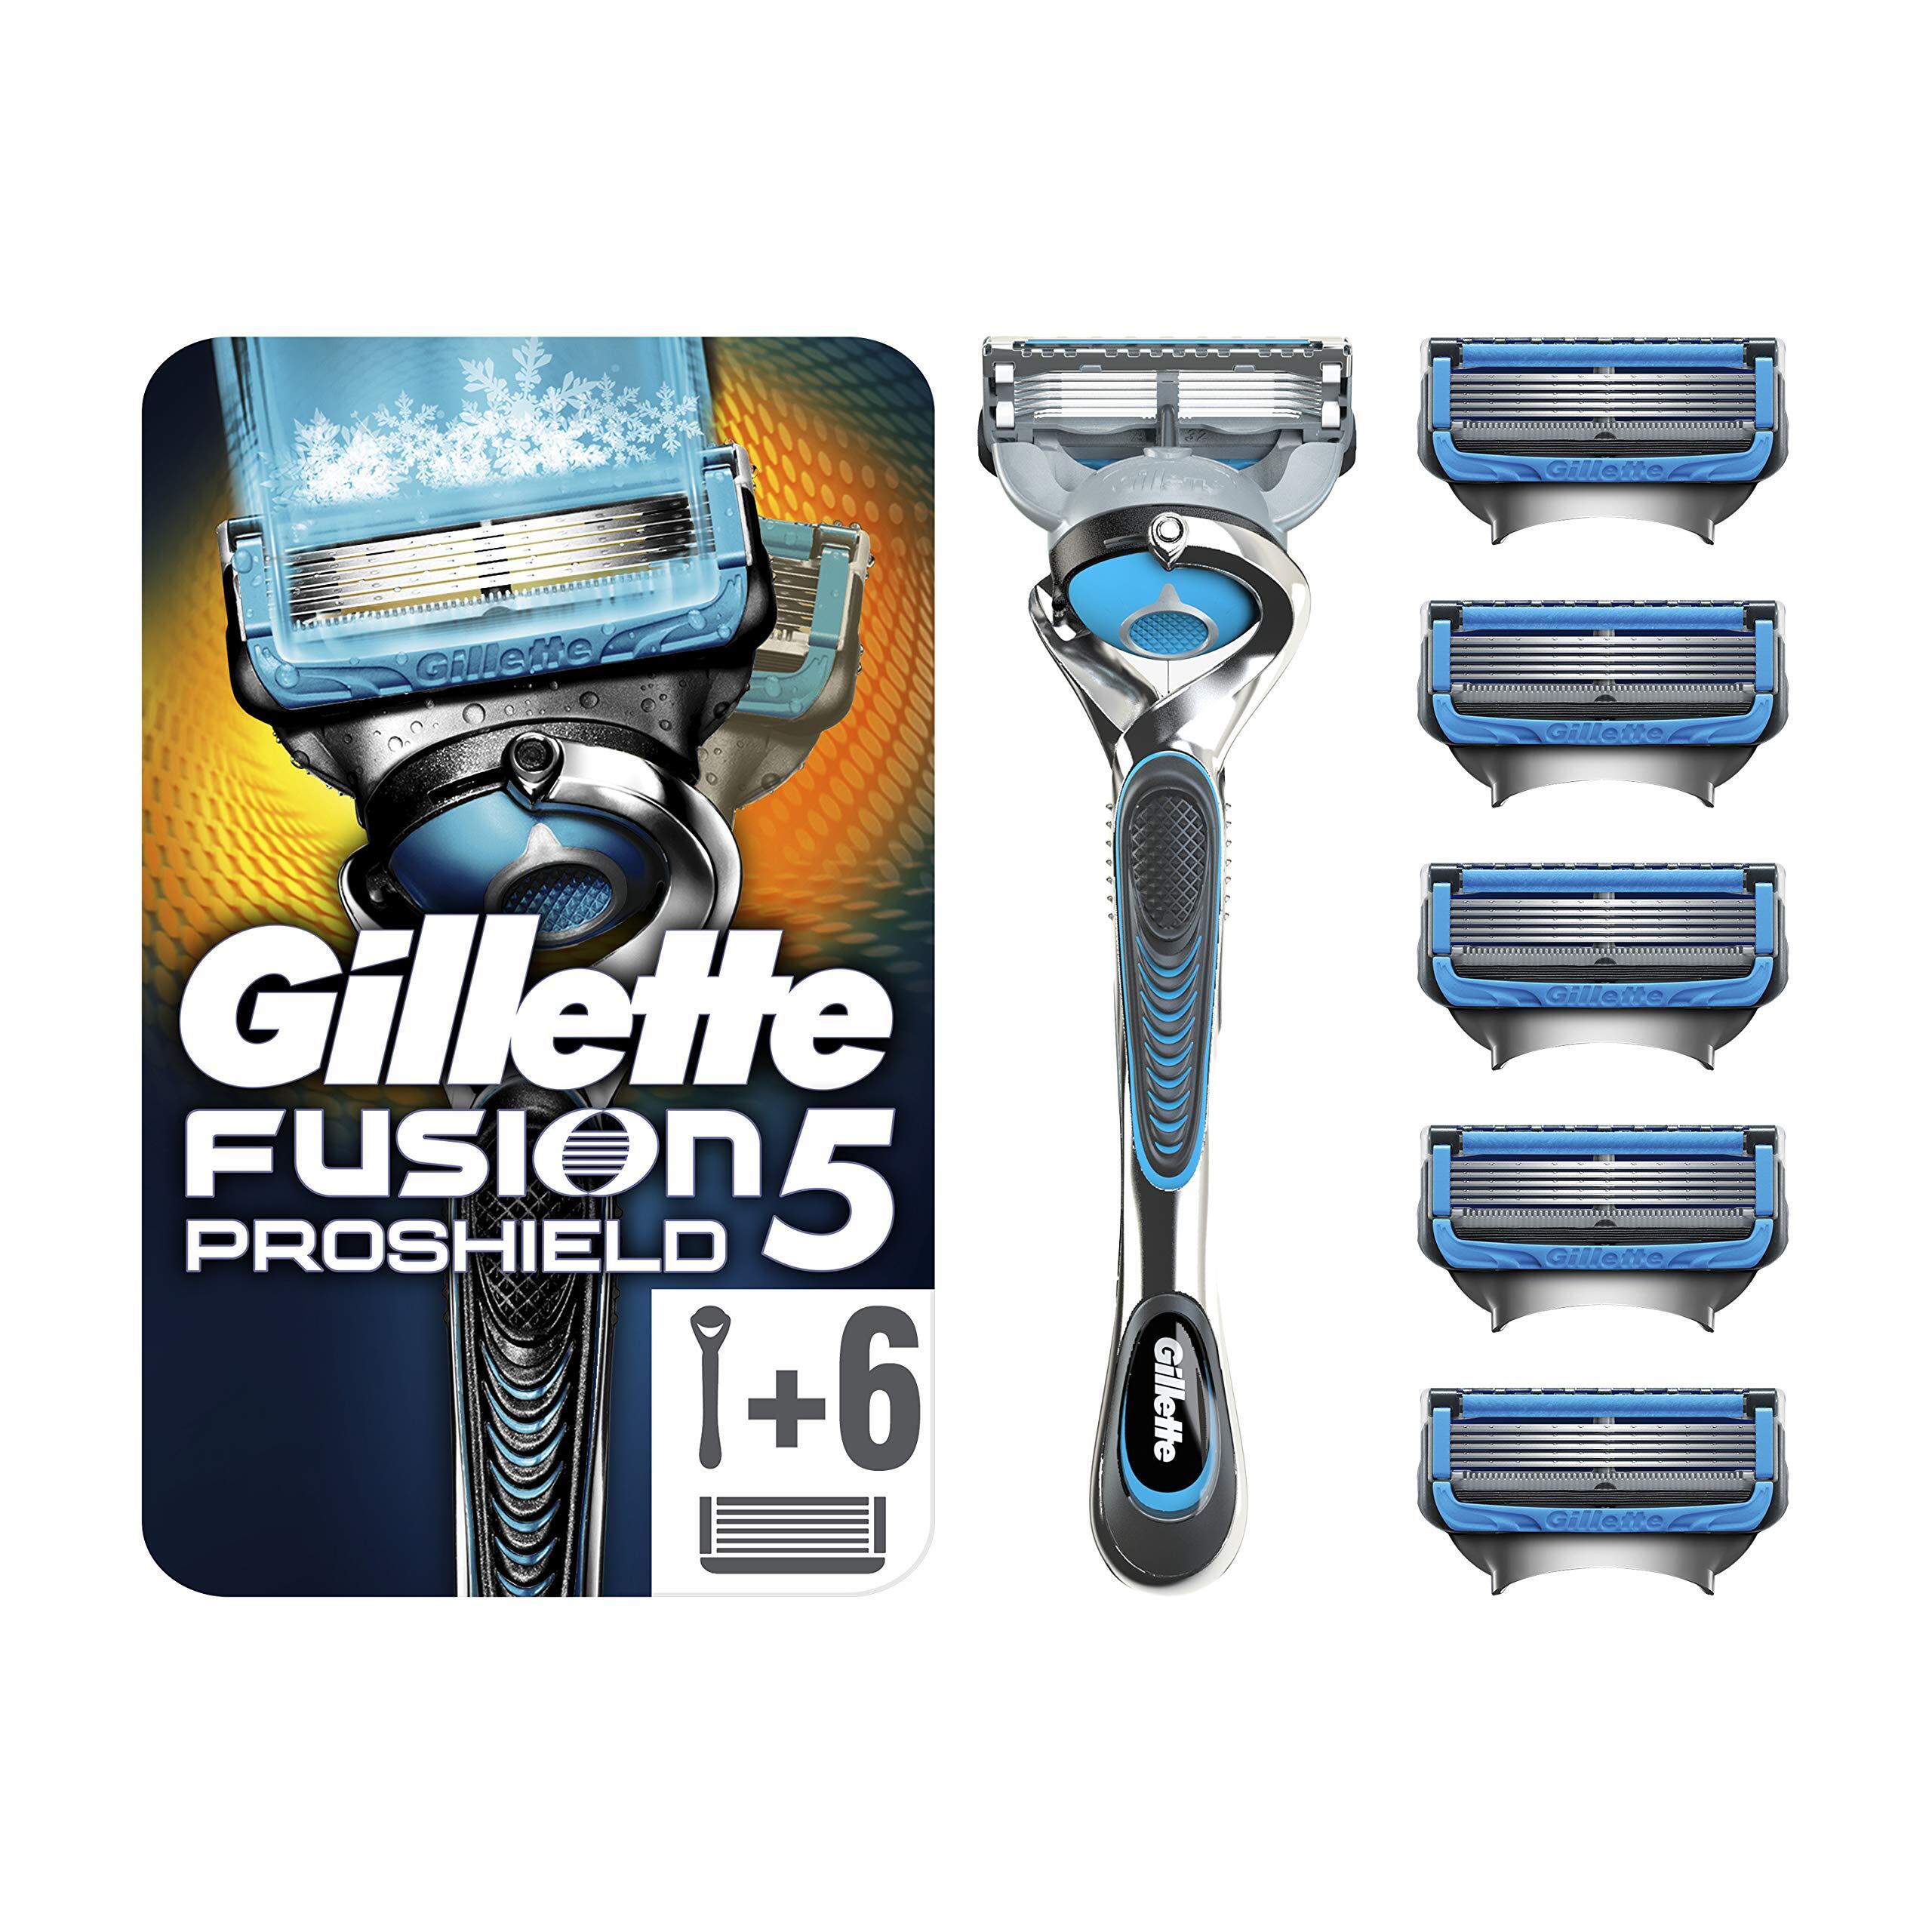 Gillette Fusion5 ProShield Chill Scheersysteem + 5 Scheermesjes - Brievenbus Verpakking